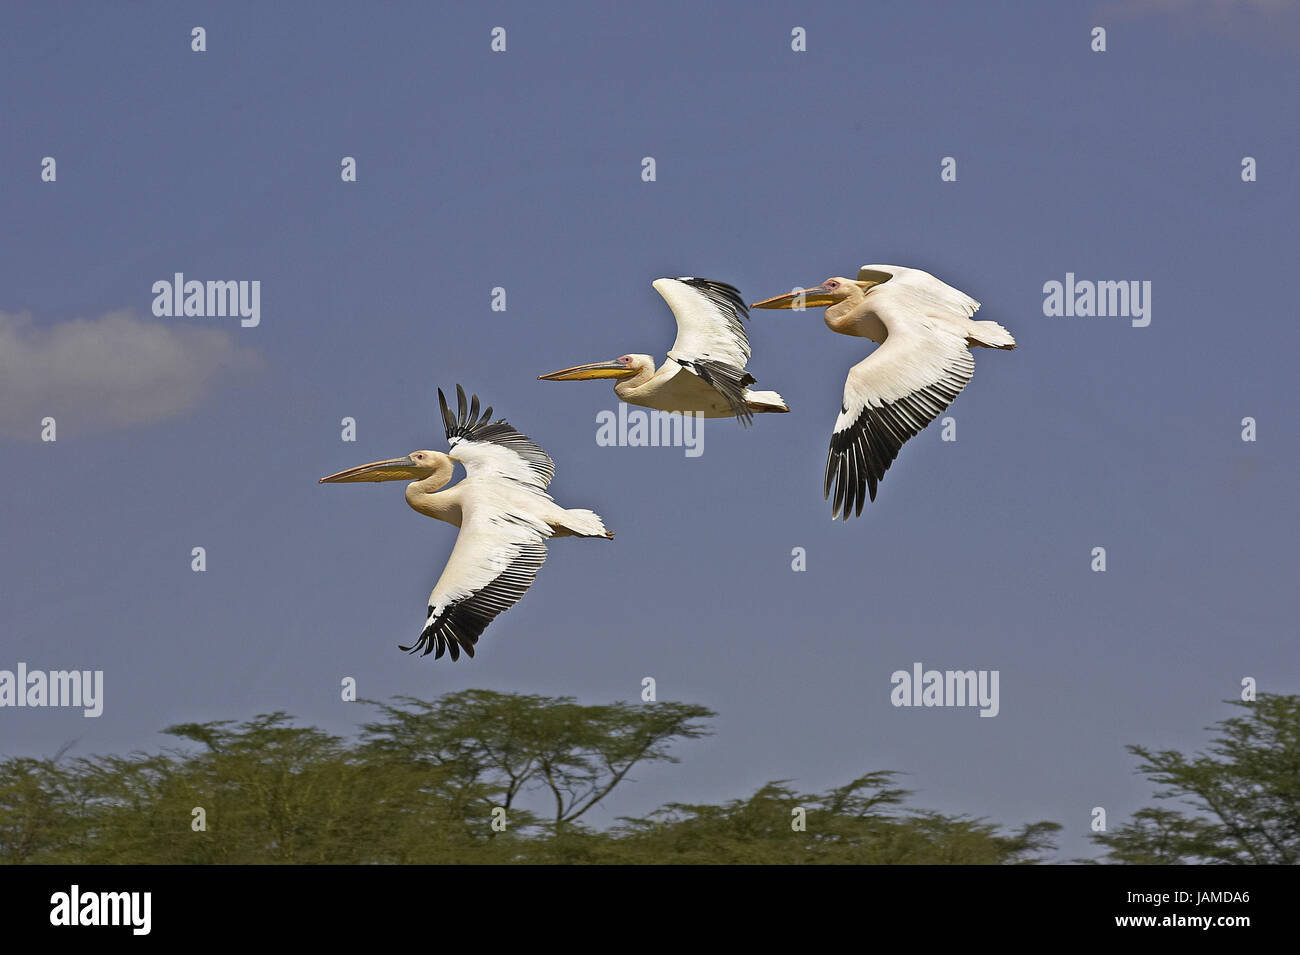 Rose's pelican,Pelecanus onocrotalus,group,flight,Nakuru brine,Kenya, Stock Photo